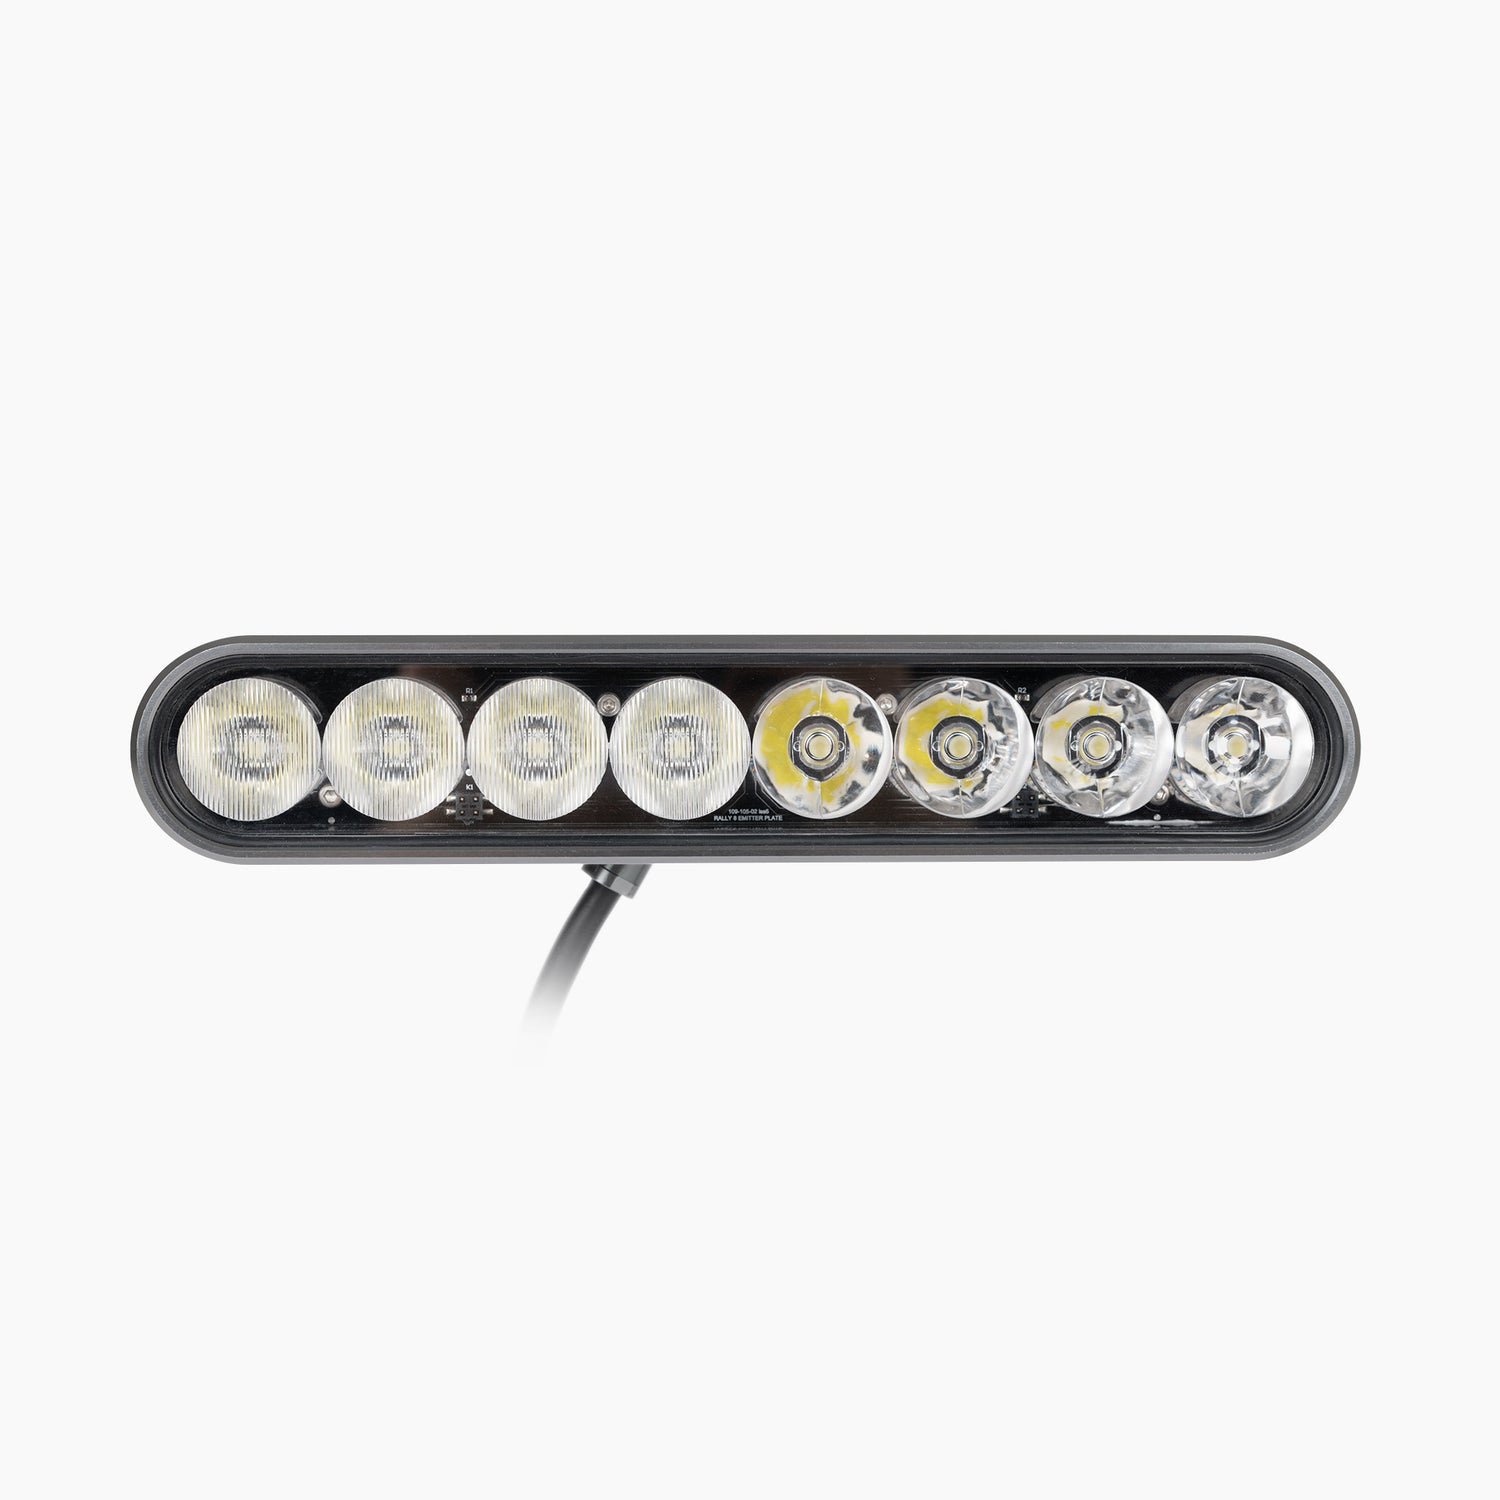 Automoto Straight 8 LED Light - 4 Spotlight Lenses / 4 Wide Lenses